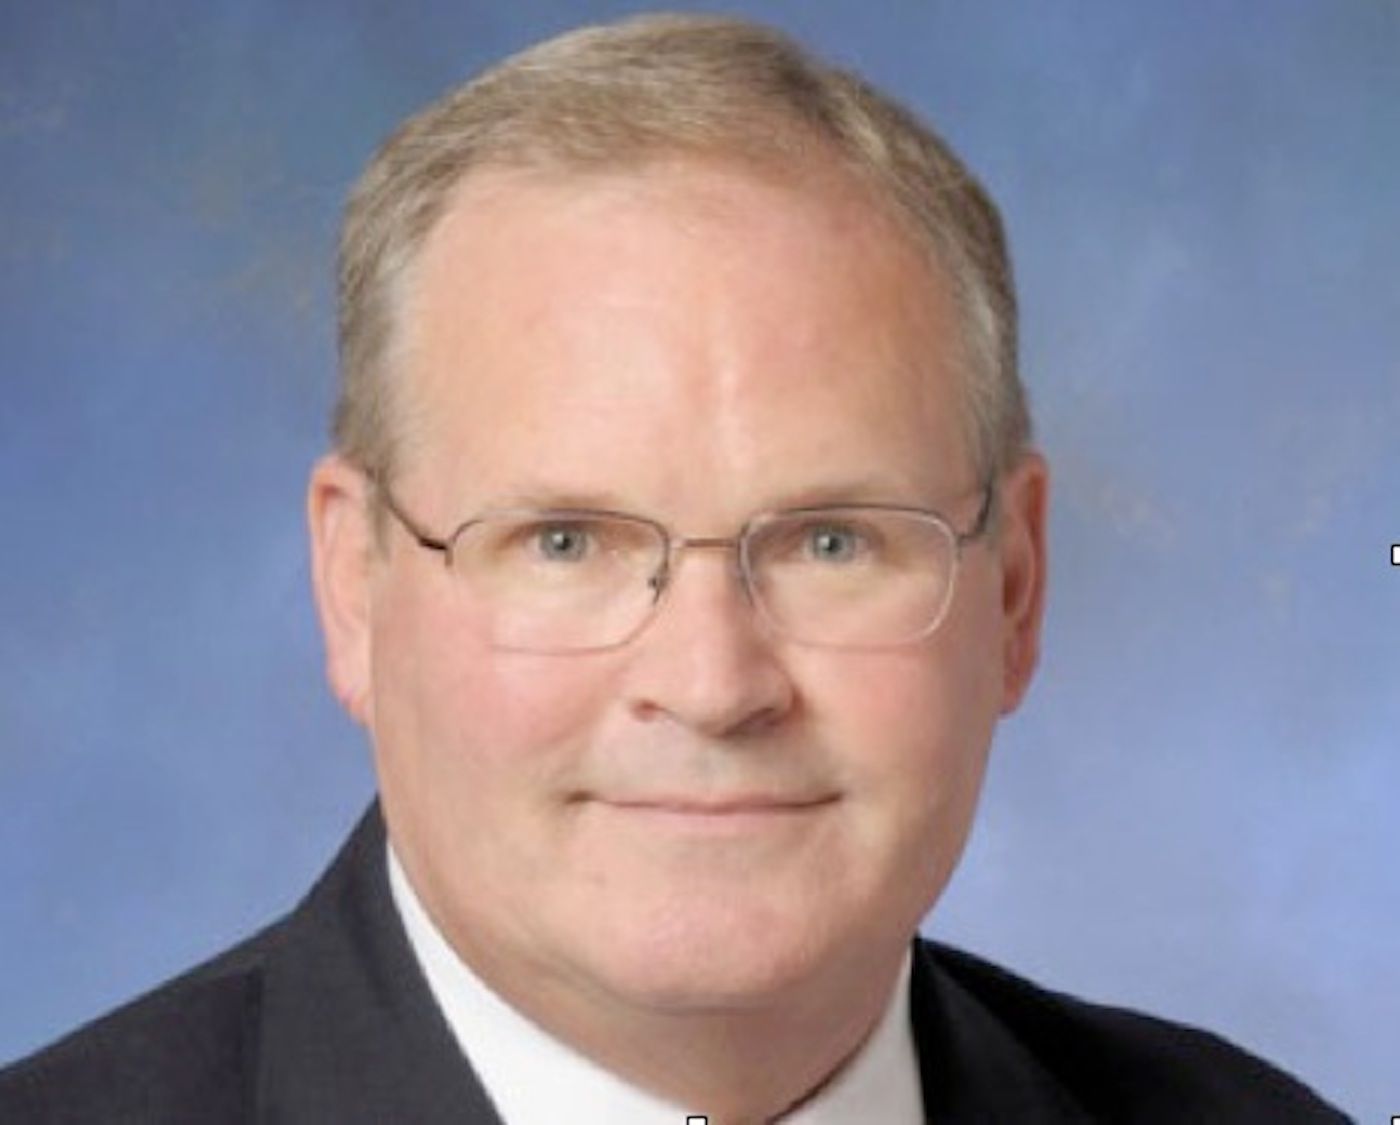 Kevin Hiatt vicepresidente senior de seguridad y operaciones IATA